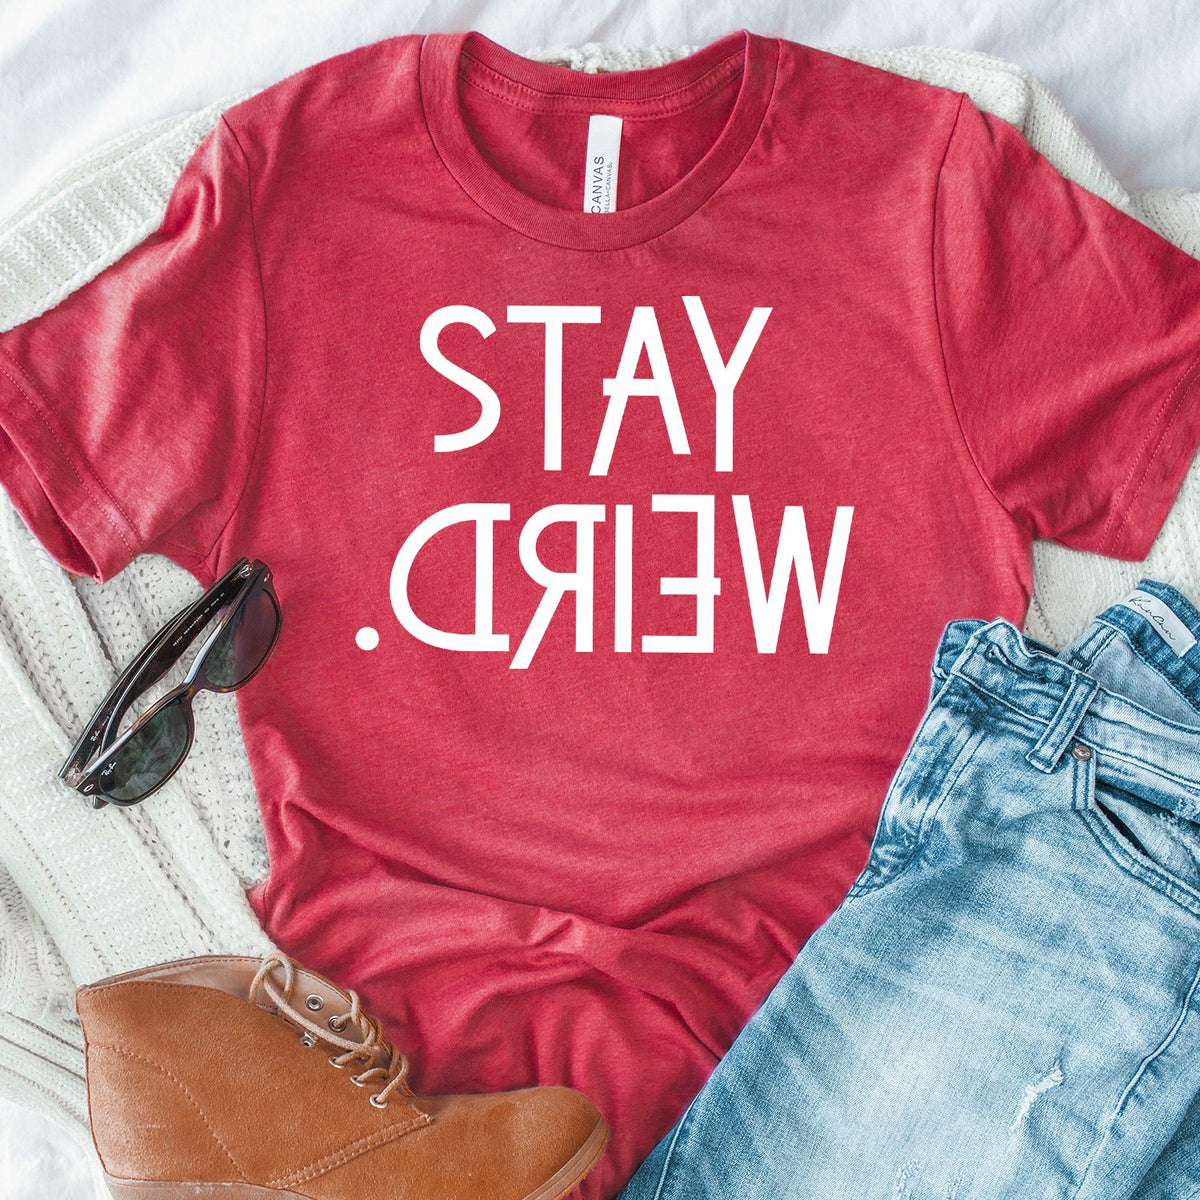 Stay Weird - Short Sleeve Tee Shirt